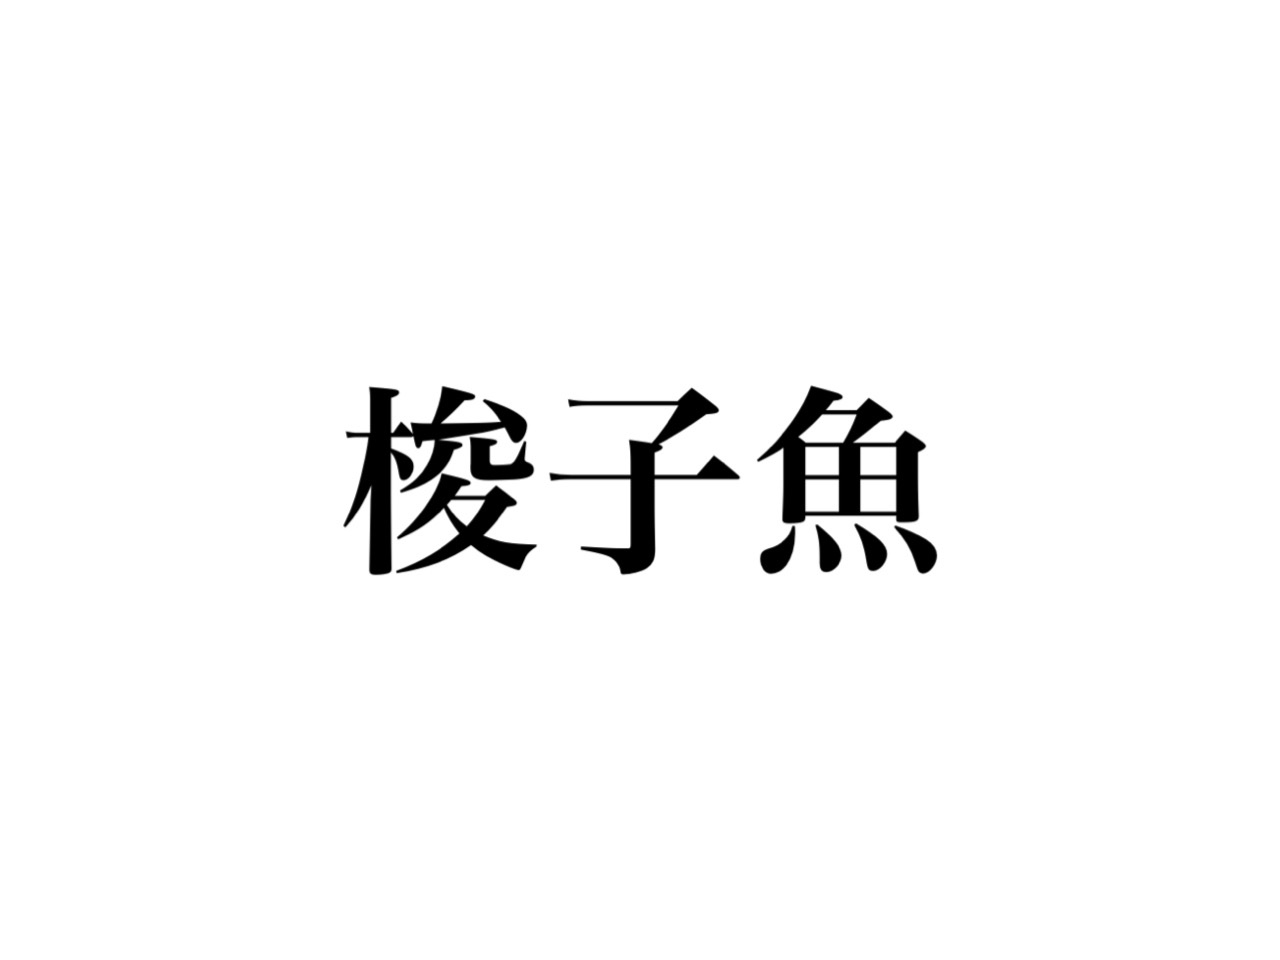 魚 へん の 漢字 クイズ 難問オセロ風 魚へんの漢字